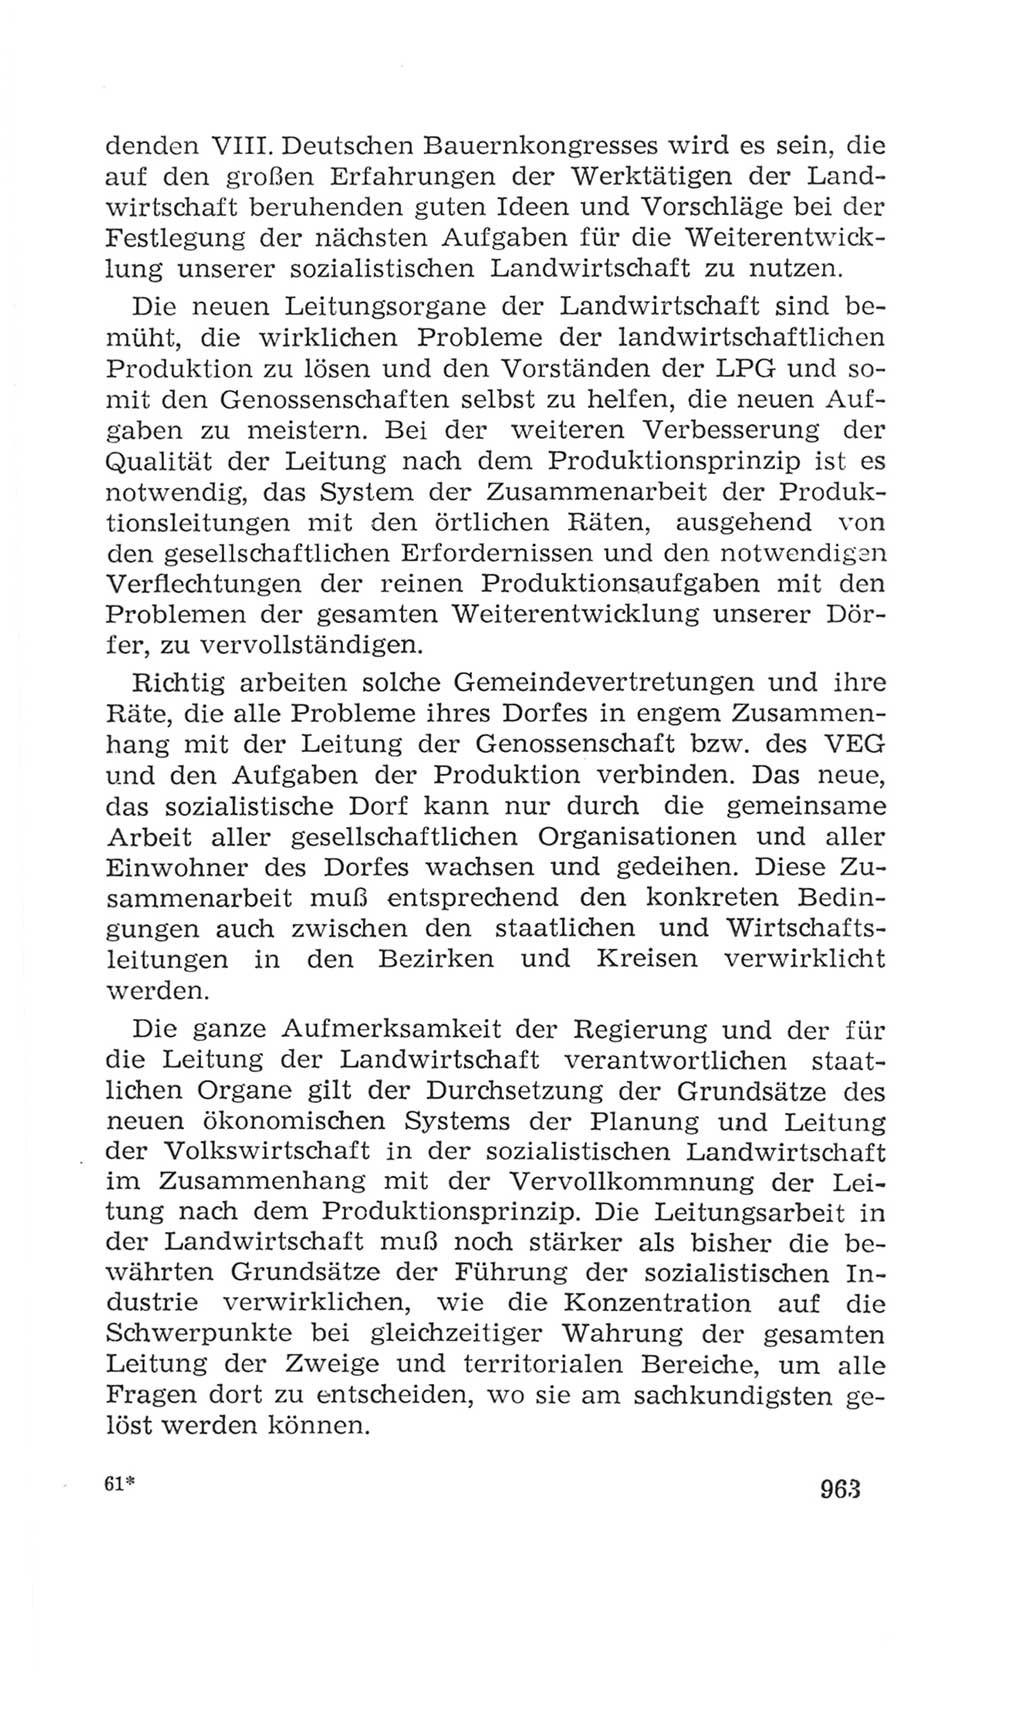 Volkskammer (VK) der Deutschen Demokratischen Republik (DDR), 4. Wahlperiode 1963-1967, Seite 963 (VK. DDR 4. WP. 1963-1967, S. 963)